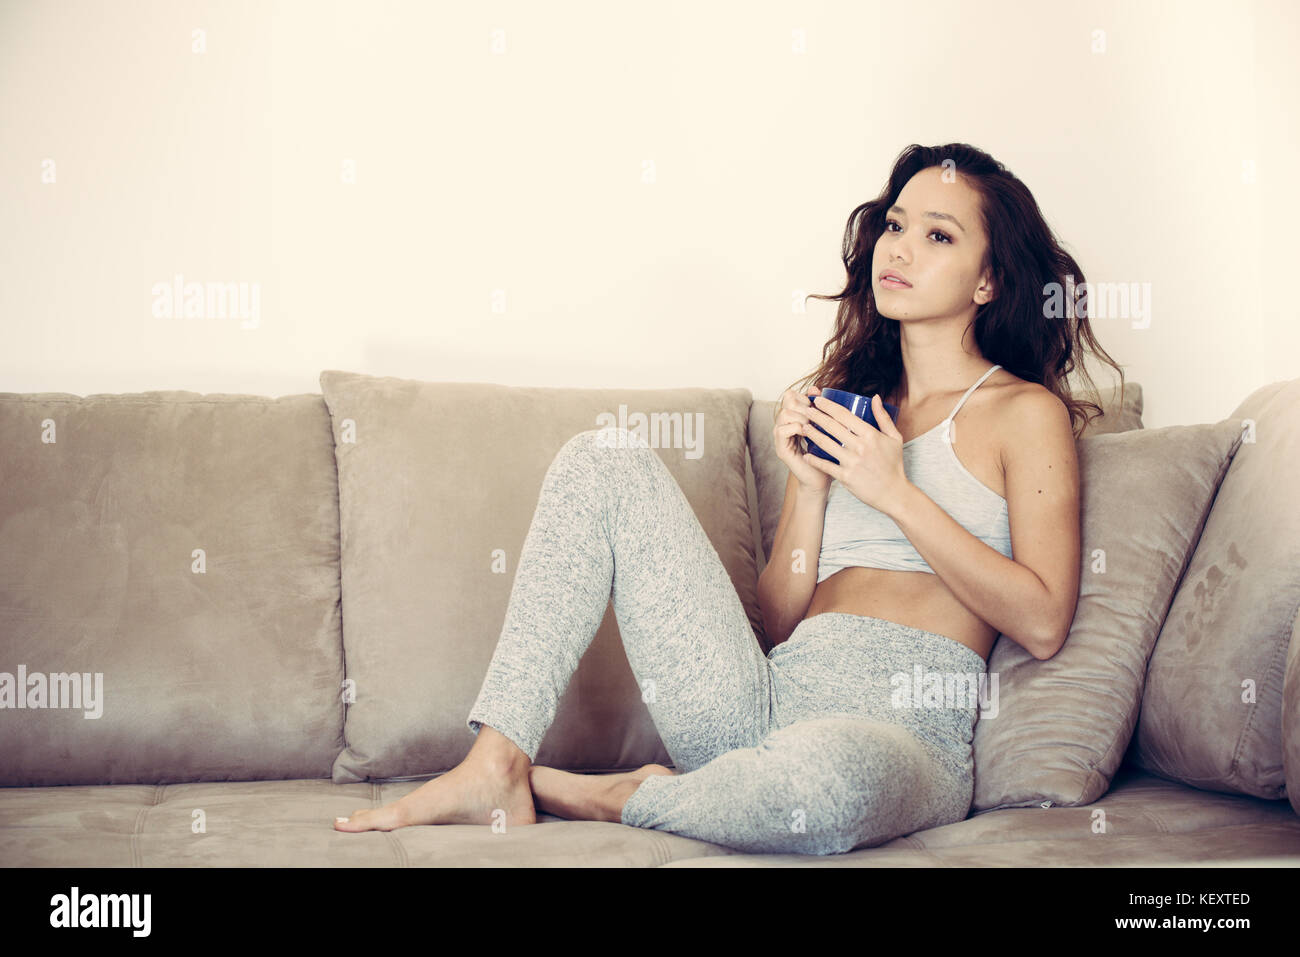 Junge hübsche asiatische Frau sitzt entspannt und nachdenklich auf der Couch nachdenklichen Gesichtsausdruck blau Tasse in den Händen Stockfoto